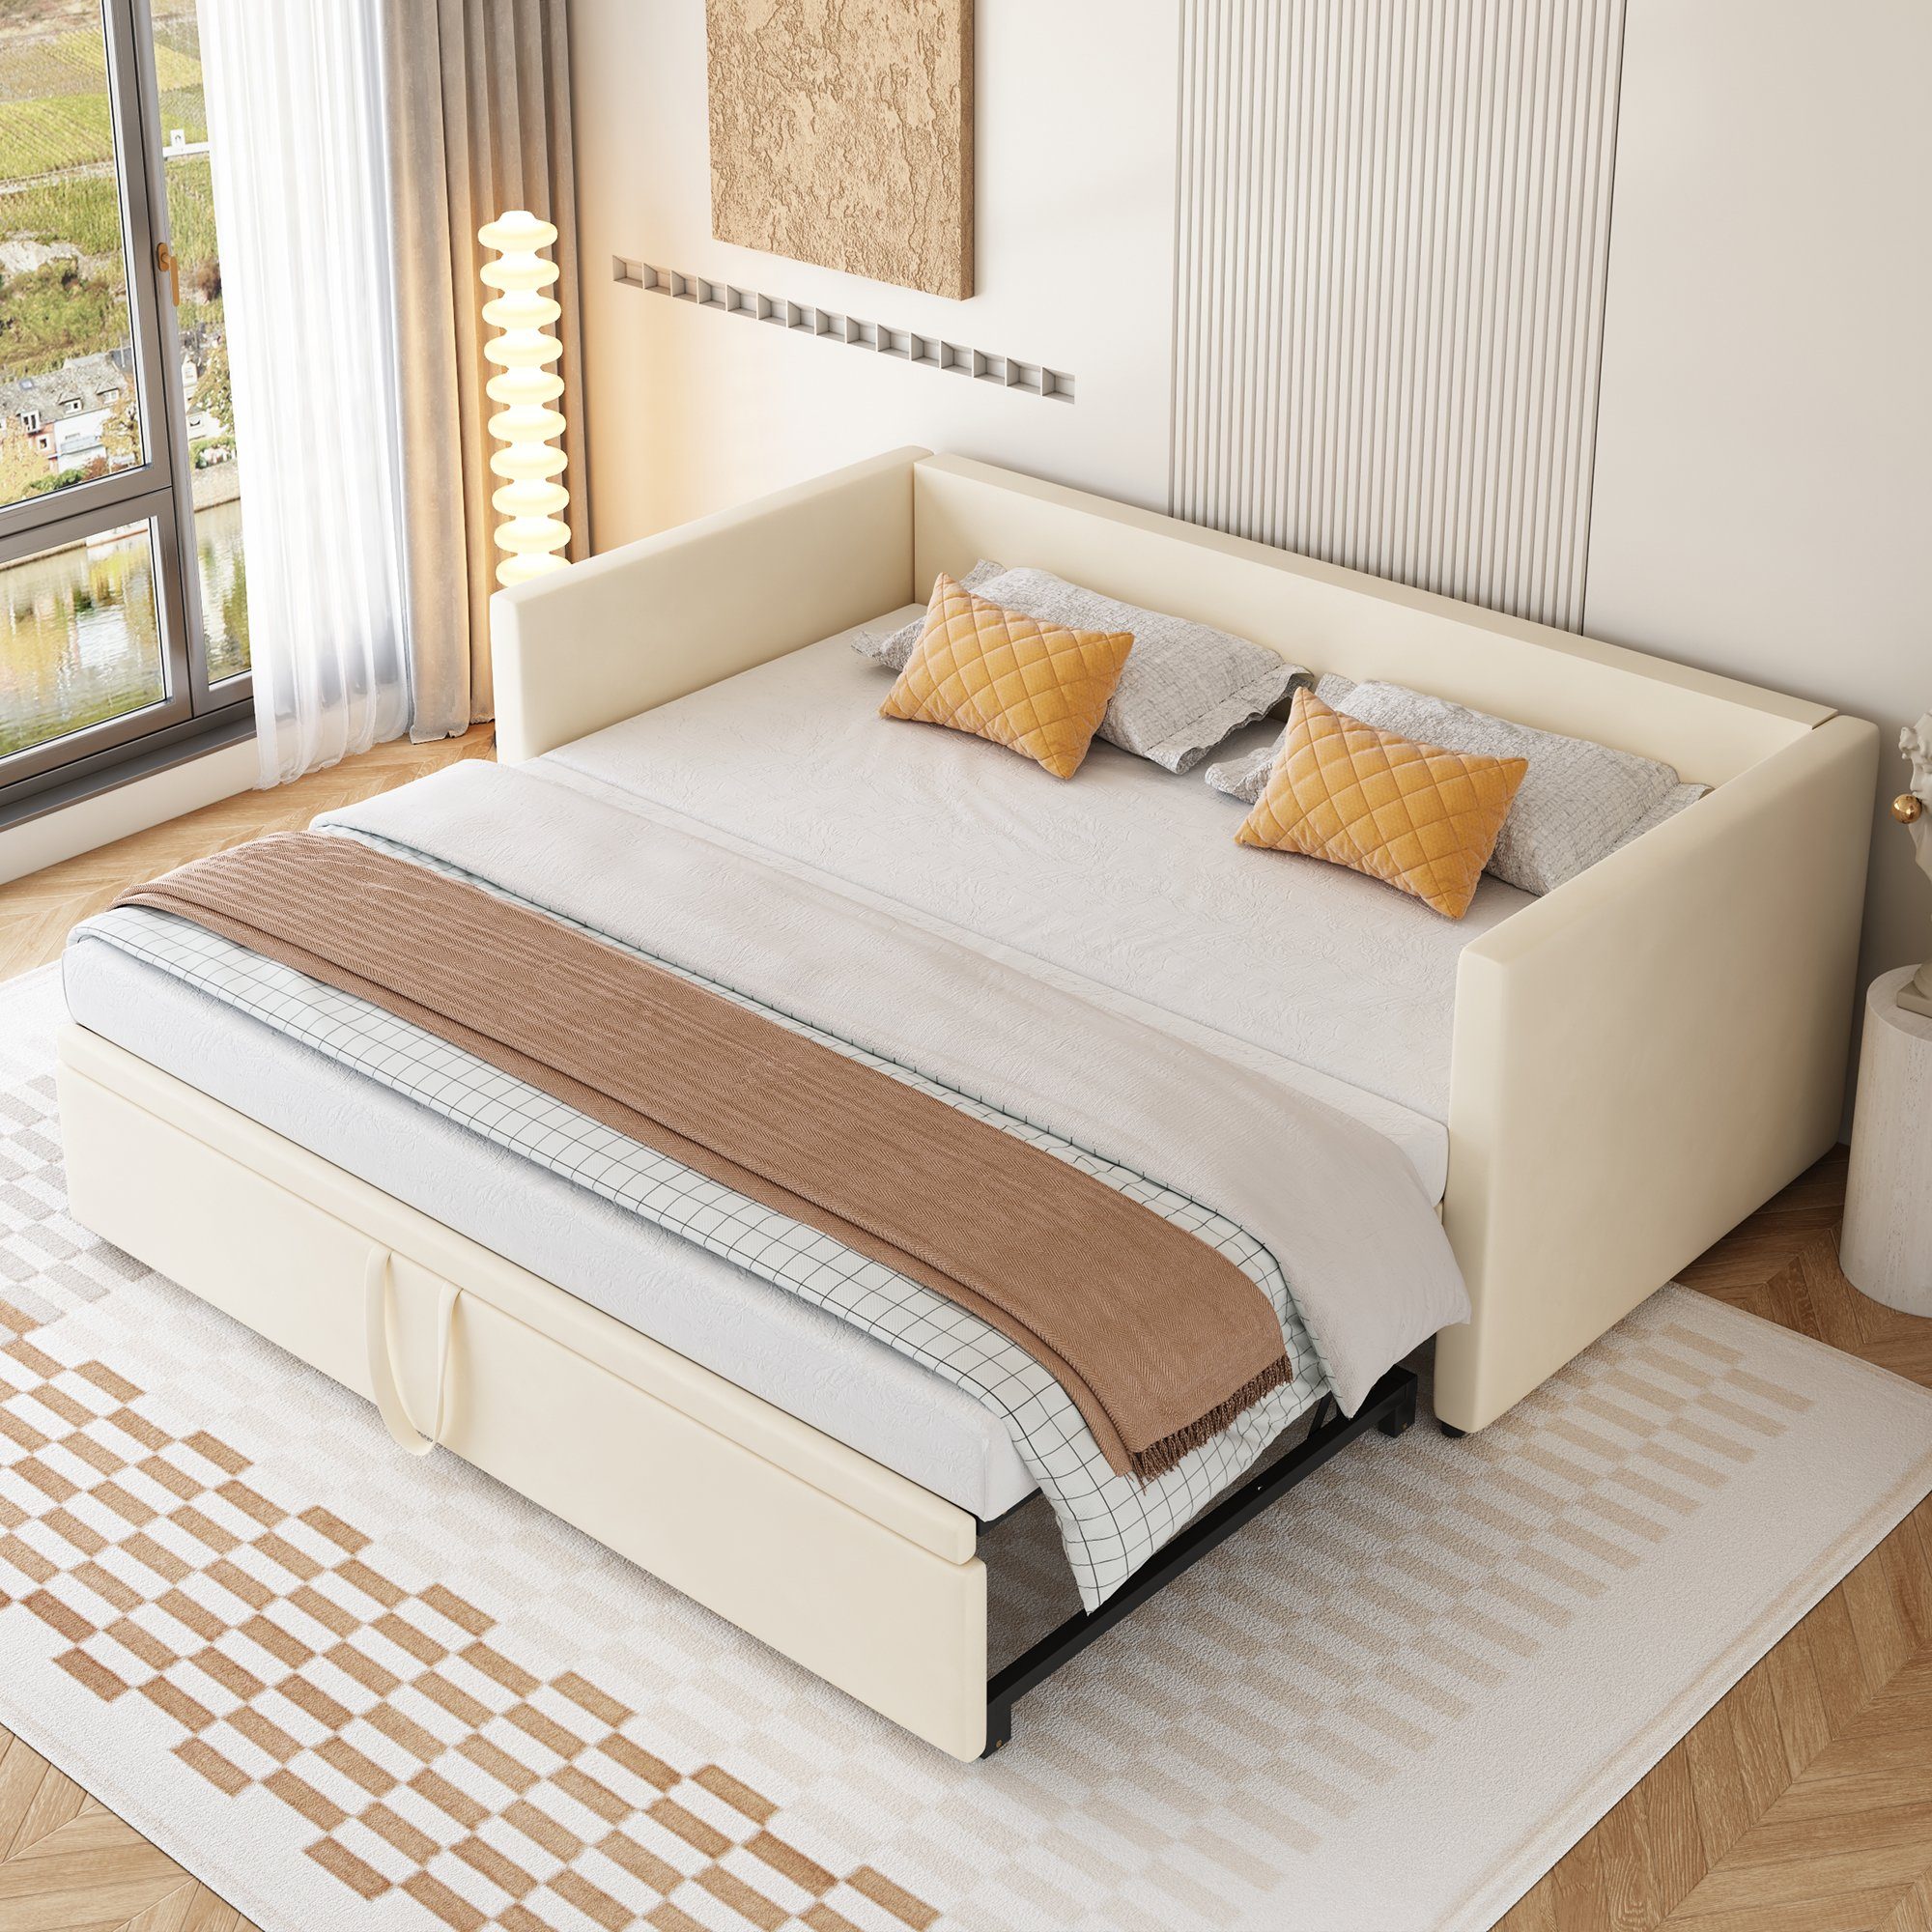 SOFTWEARY Schlafsofa Ausziehbett mit Bettfunktion, inkl. Lattenrost, 90x200  cm/180x200 cm, Jugendbett aus Holz, Bezug aus Samt